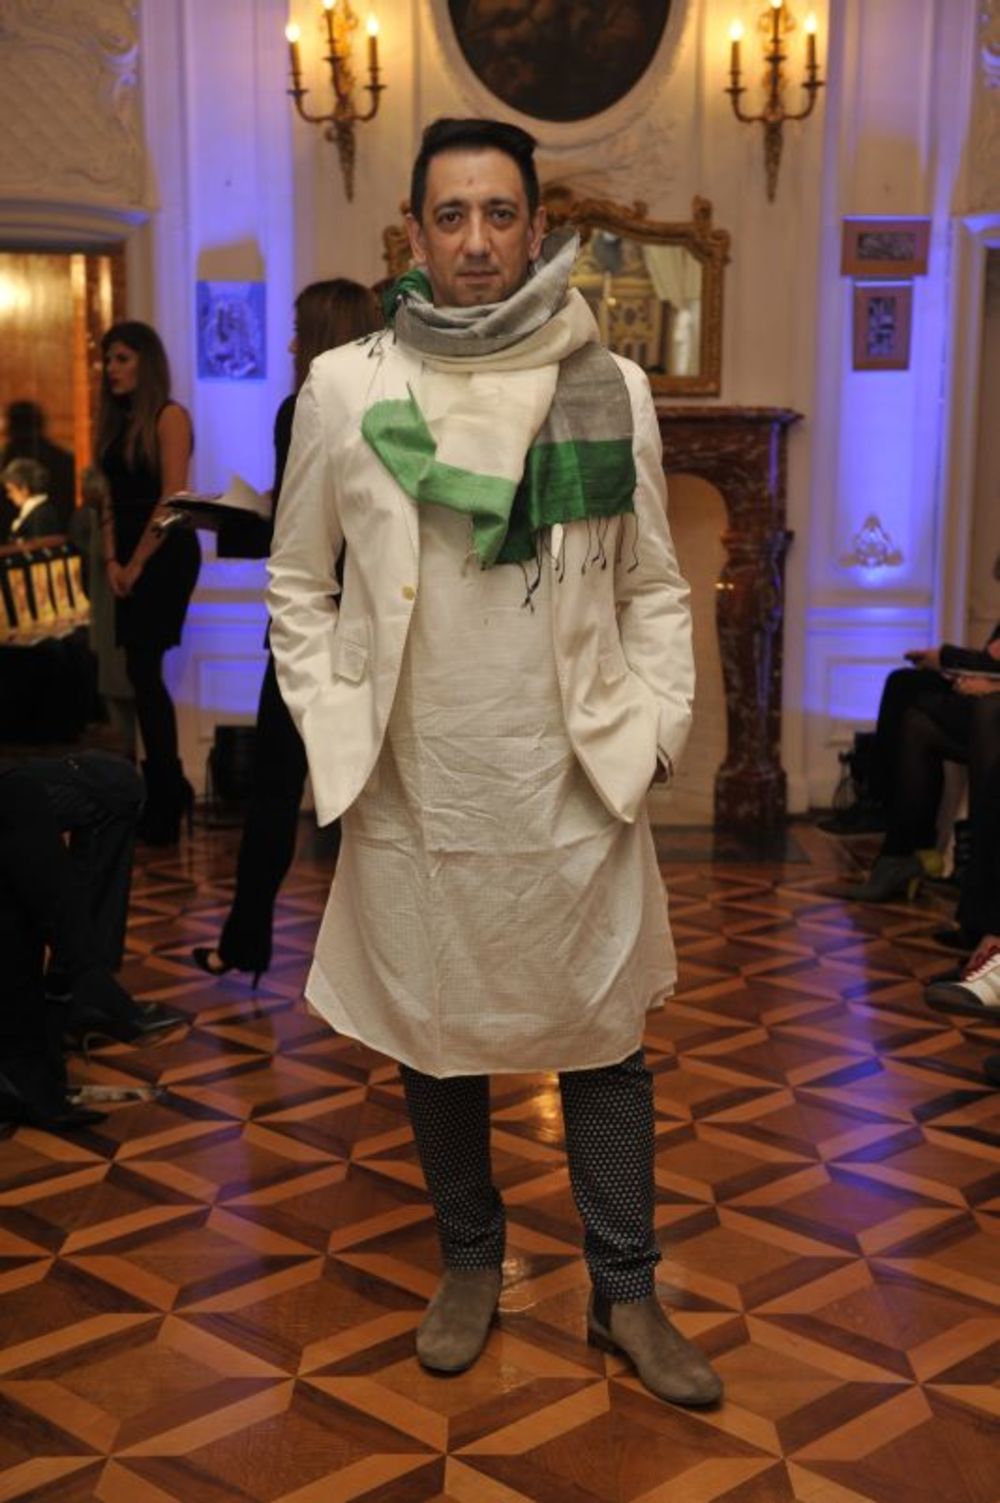 Posebna atrakcija 35. Perwoll fashion Week-a svakako je revija  svetski  poznatog indijskog dizajnera- Manish Arora koji je preksinoć u prelepoj kući India House imao reviju. Zahvaljujući stručnom konsultantu Fashion Weeka iz Pariza - Zoranu Bosancu i saradnji